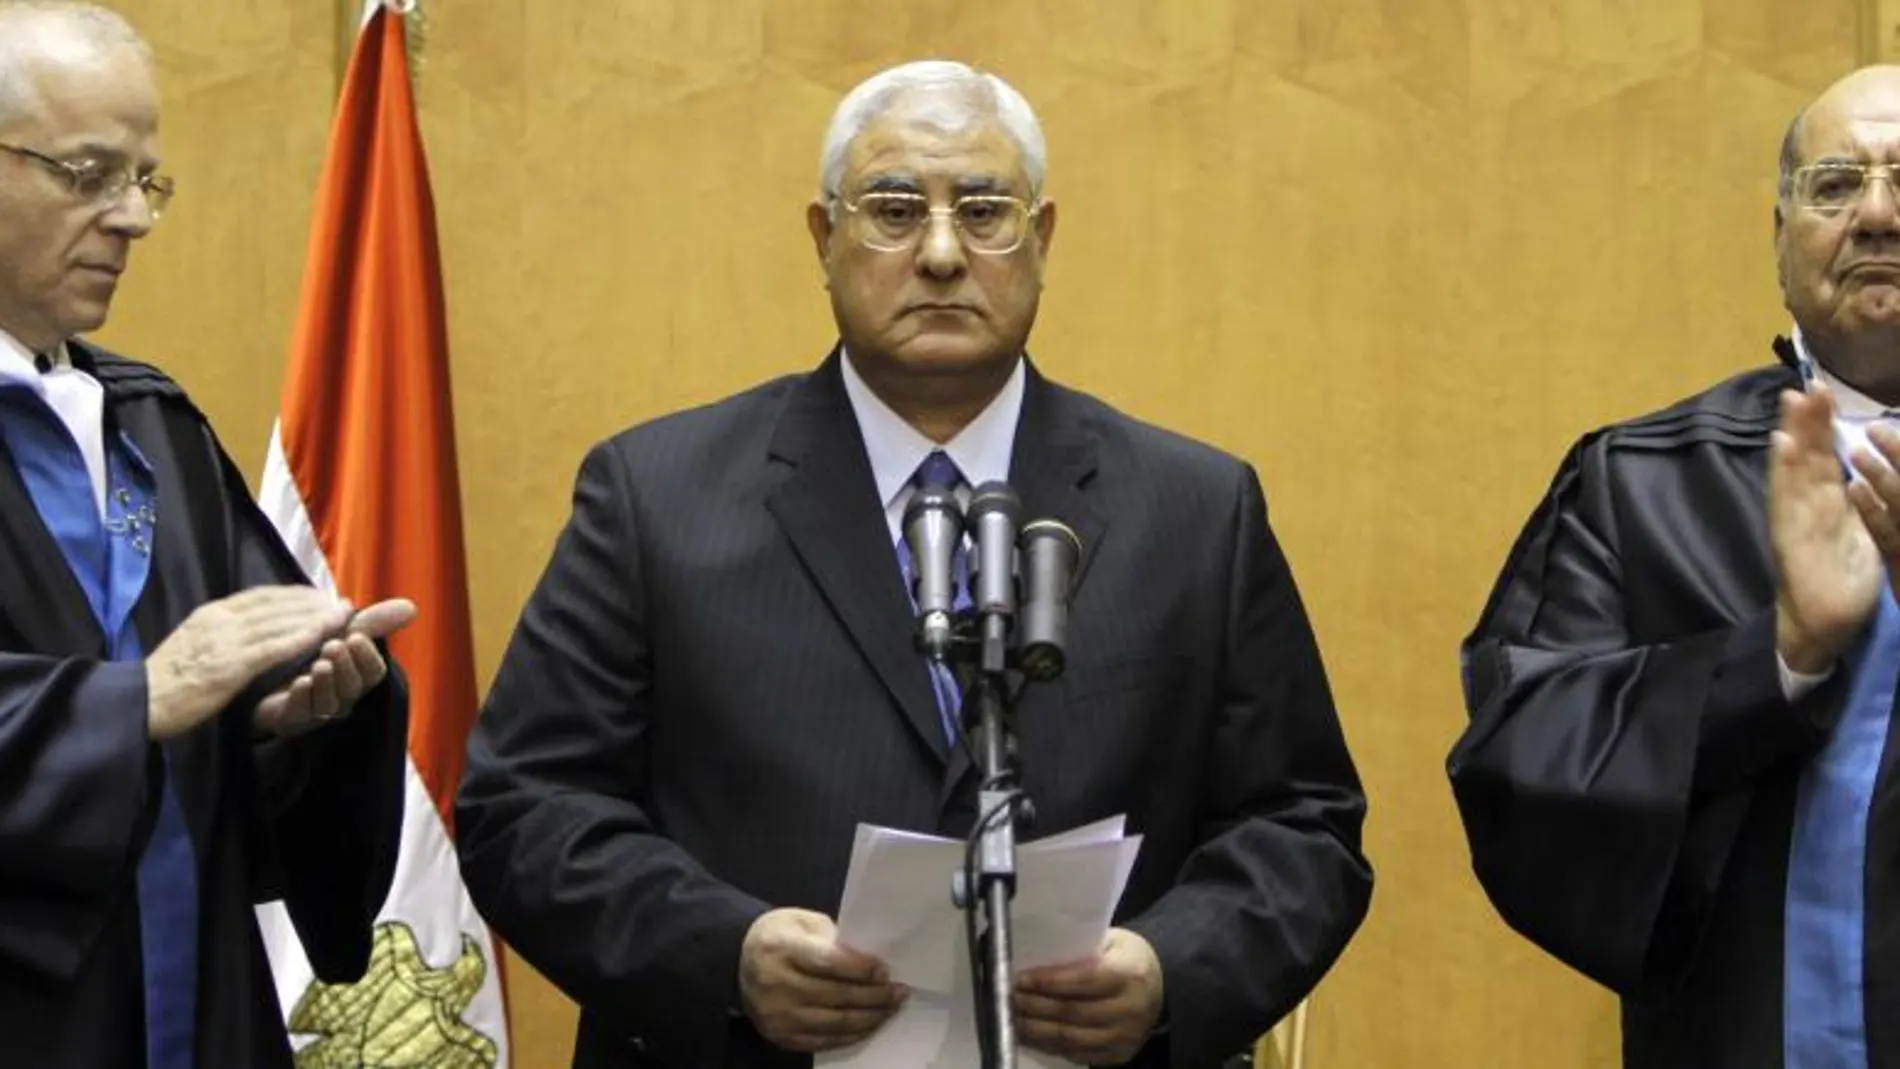 Adly Mansour, en el centro de la imagen, durante el acto de toma de posesión como presidente interino